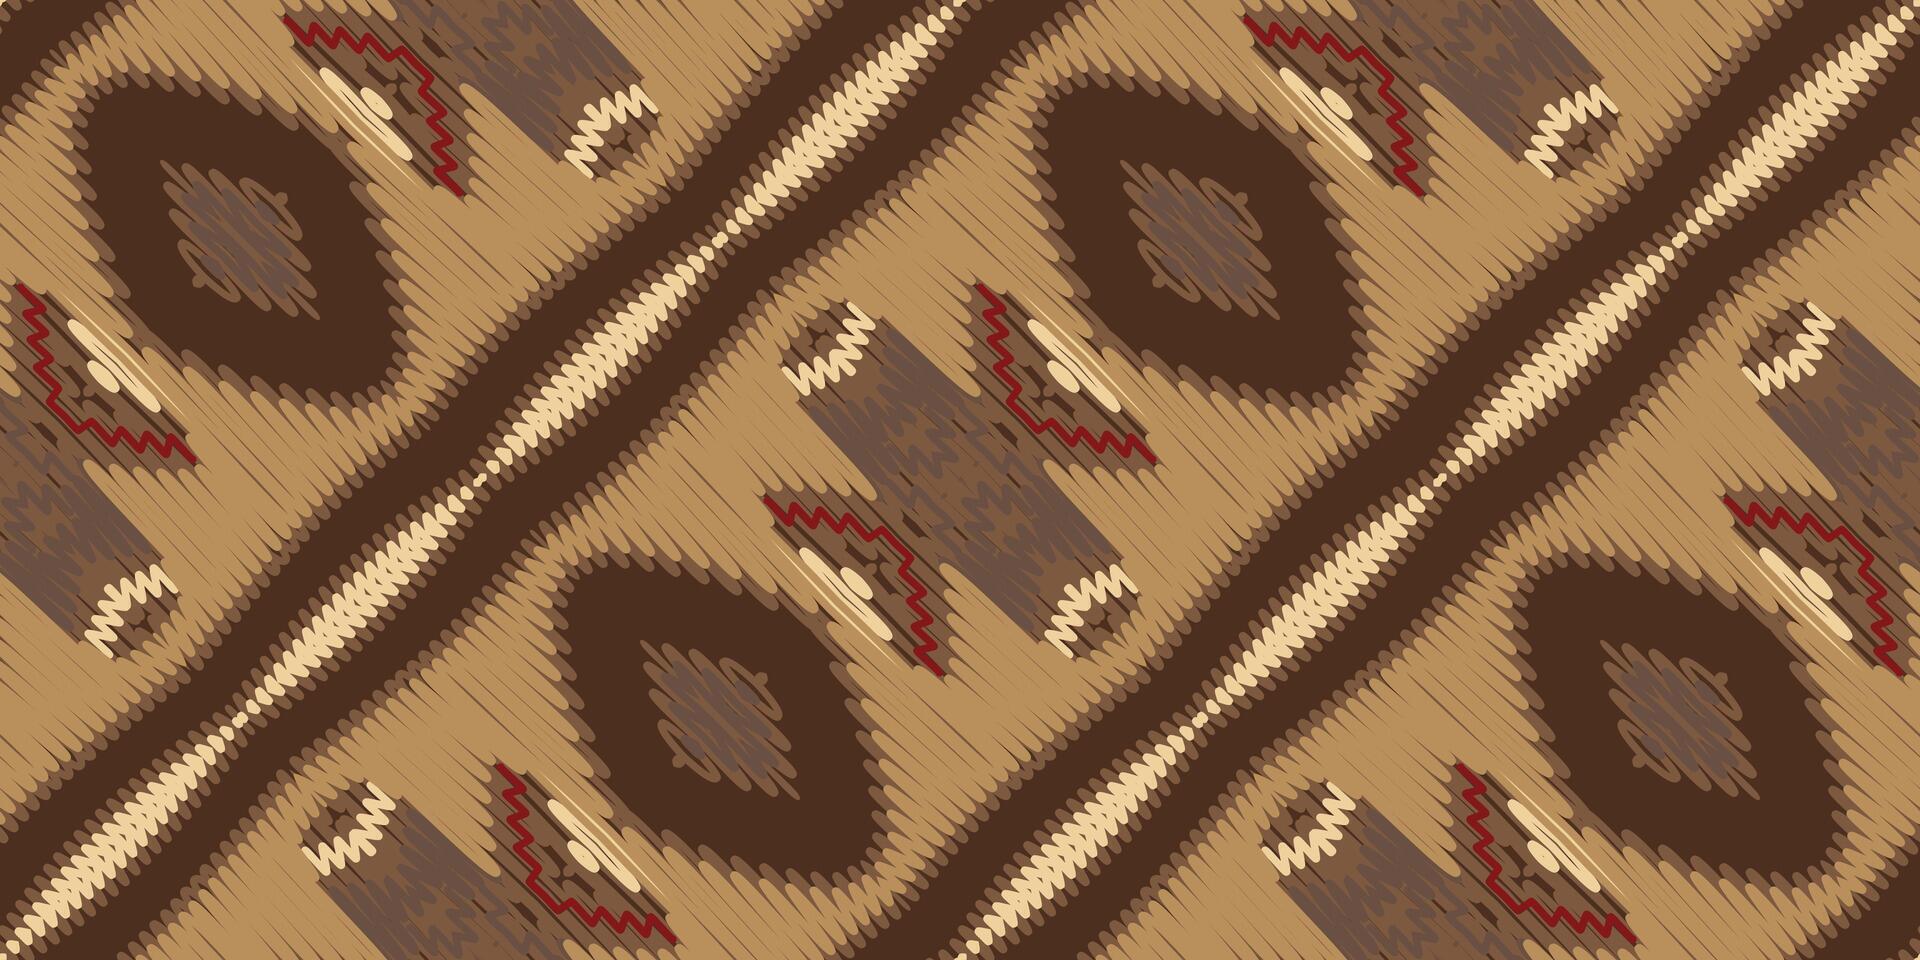 barok patroon naadloos Australisch aboriginal patroon motief borduurwerk, ikat borduurwerk vector ontwerp voor afdrukken Egyptische hiërogliefen Tibetaans geo- patroon